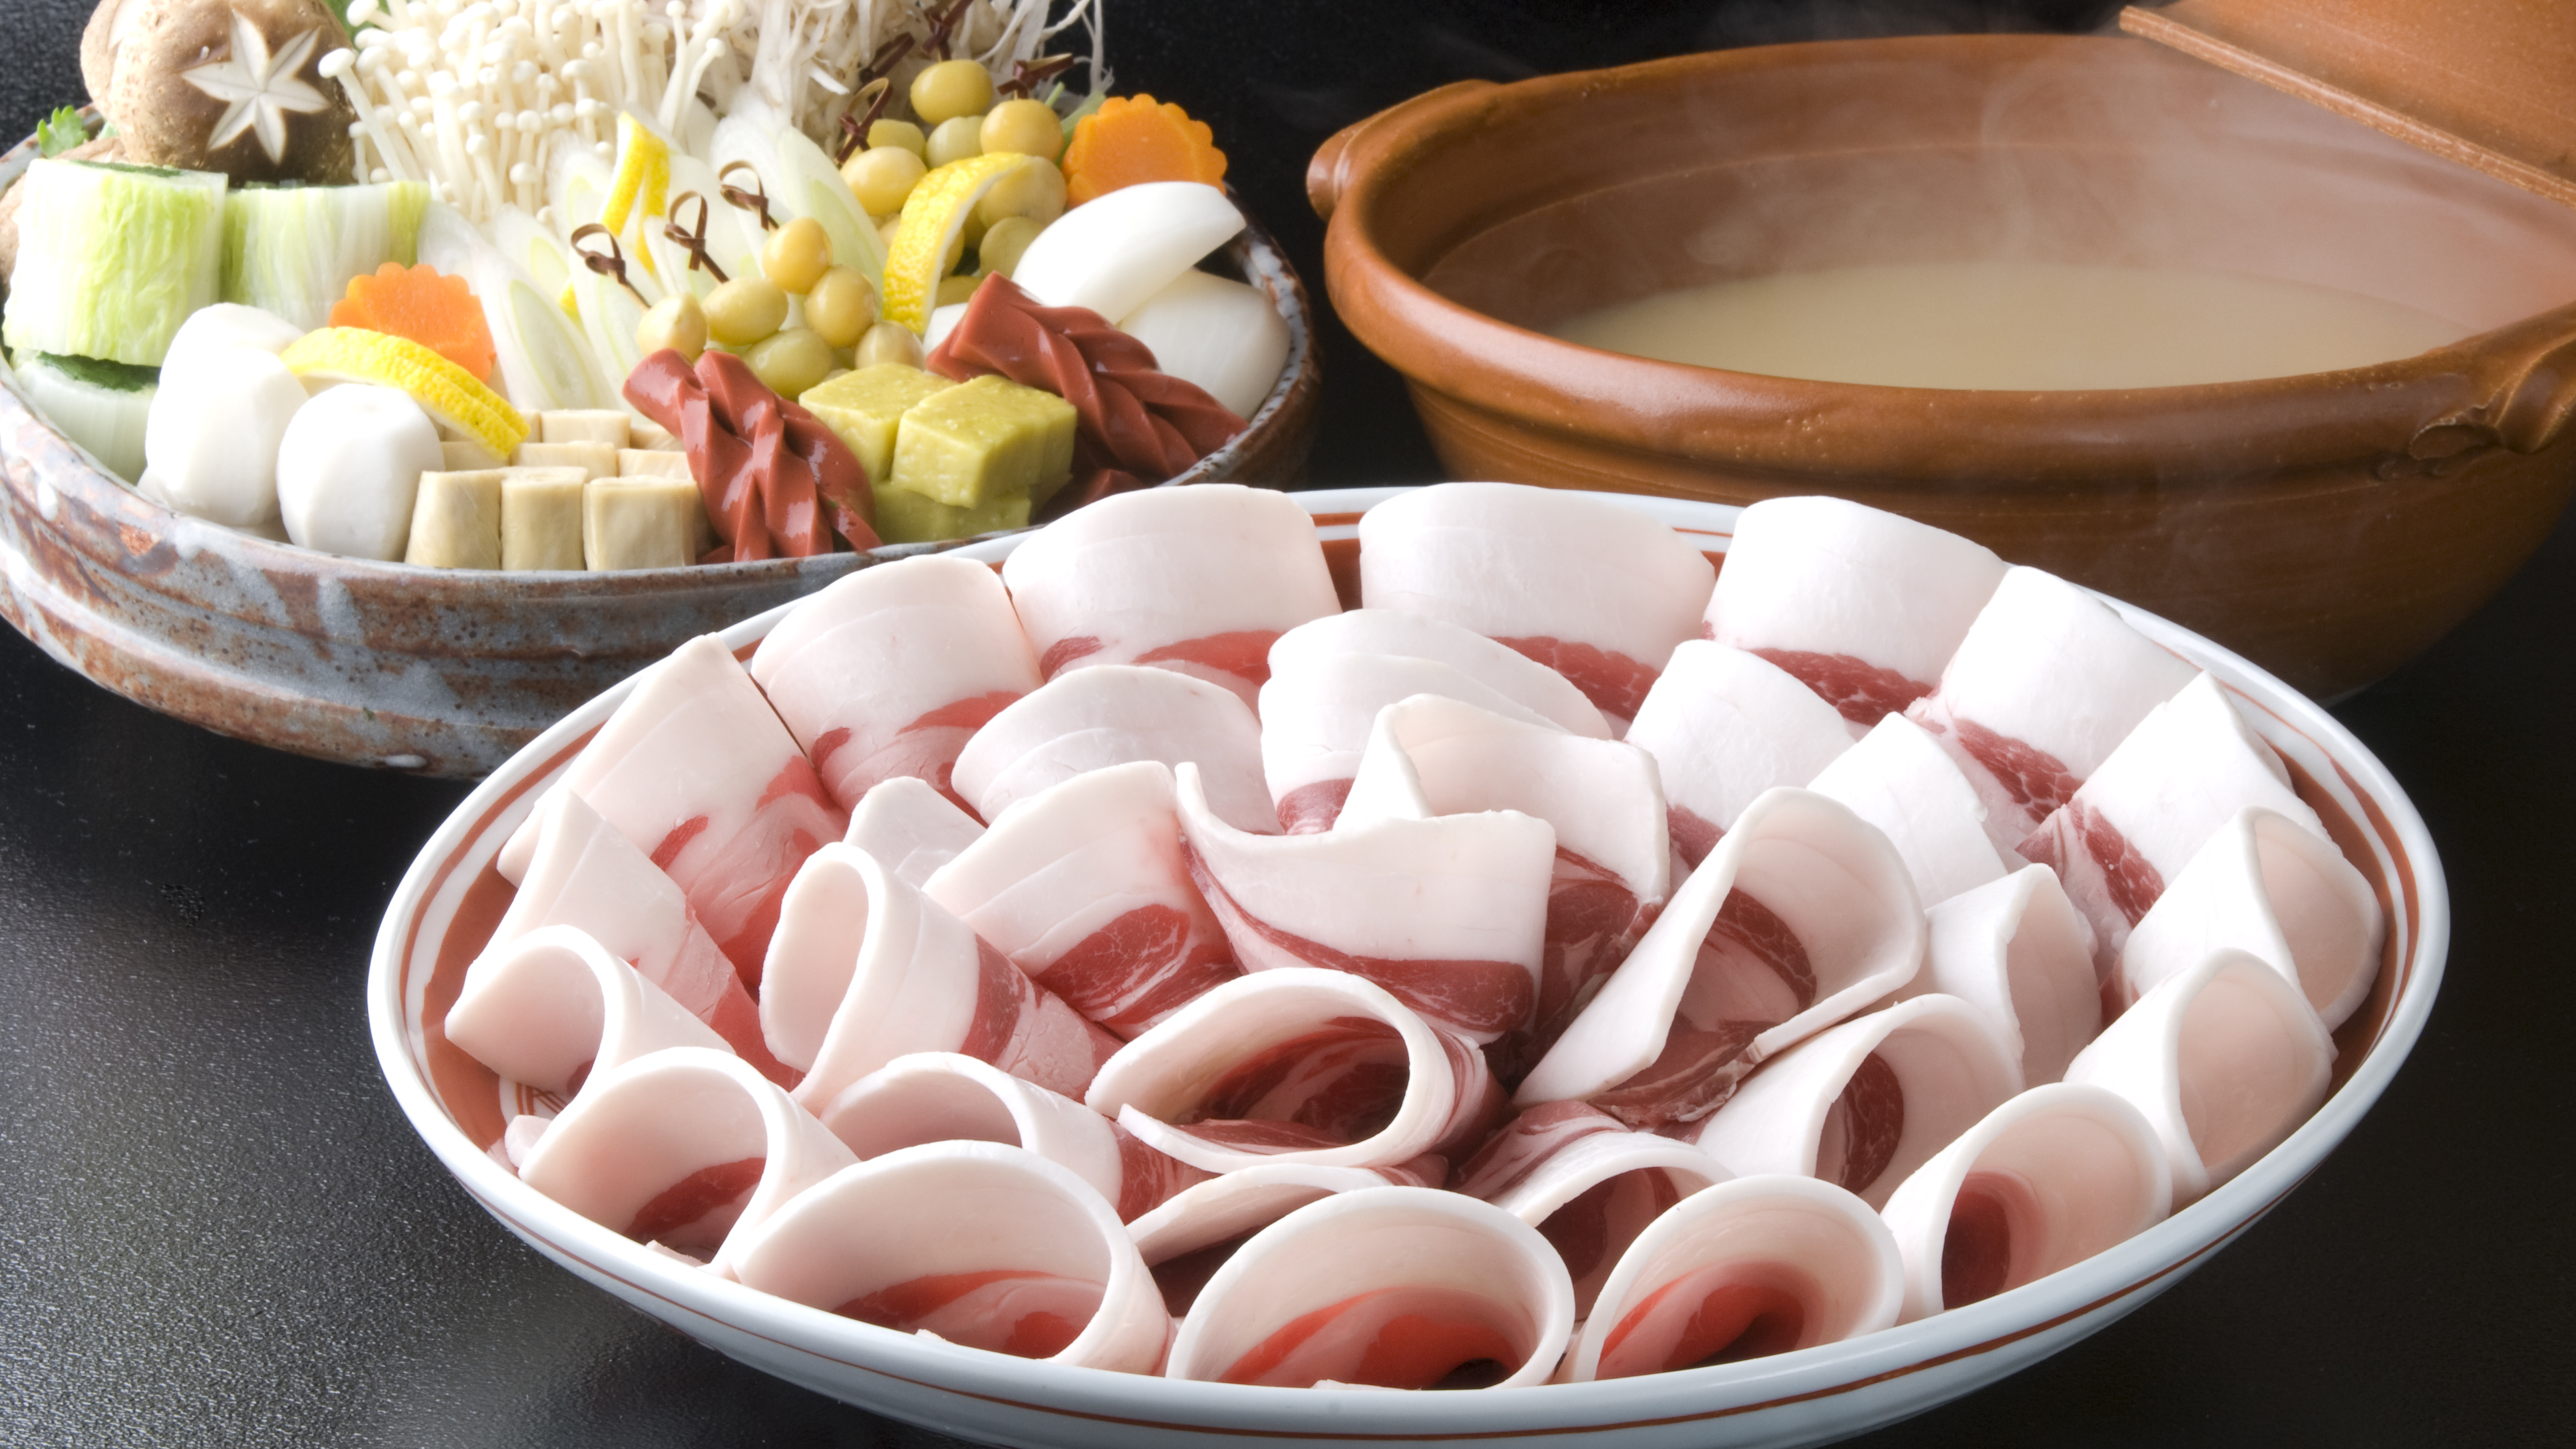 冬季限定 ぼたん鍋◆兵庫県 丹波篠山の郷土料理「ぼたん鍋」は、豚肉よりも濃厚な猪肉が絶品です。